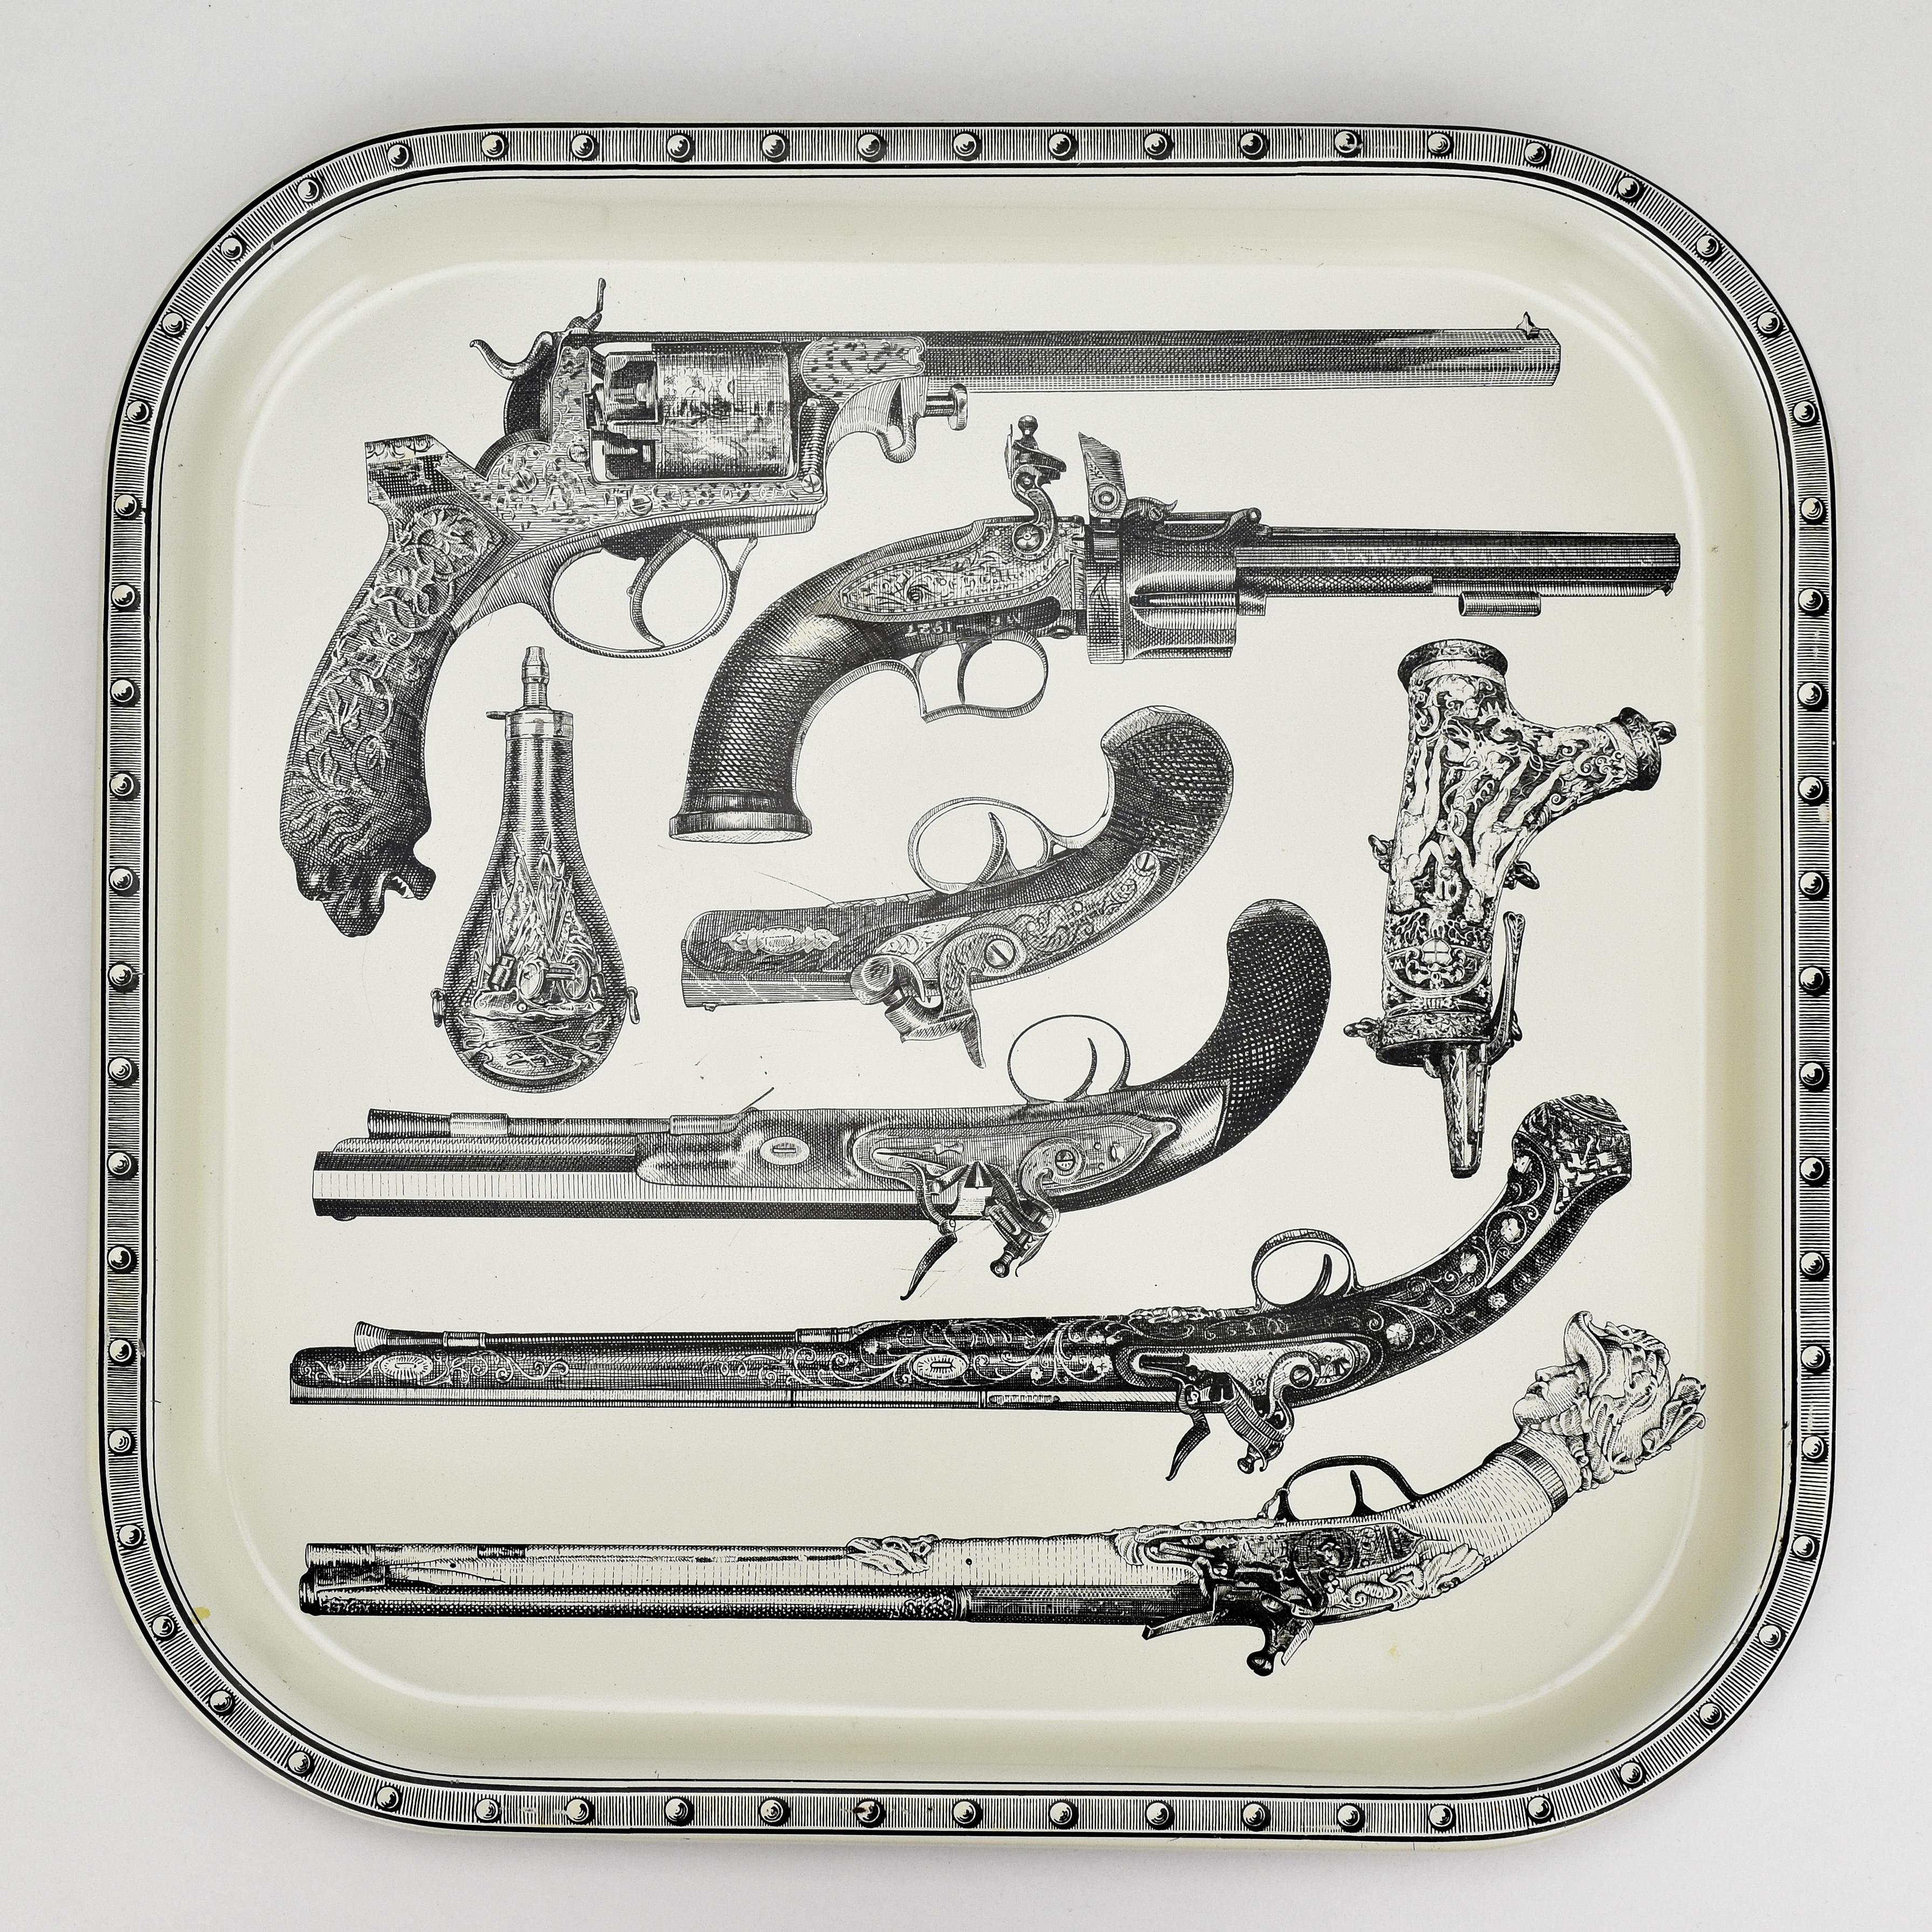 Das von Piero Fornasetti in den 1960er Jahren entworfene Siebdruck-Metalltablett zeigt detailgetreue Darstellungen von Gewehren aus mehreren Jahrhunderten. Die Siebdrucktechnik verleiht ihm einen klassischen Touch, der die detaillierte